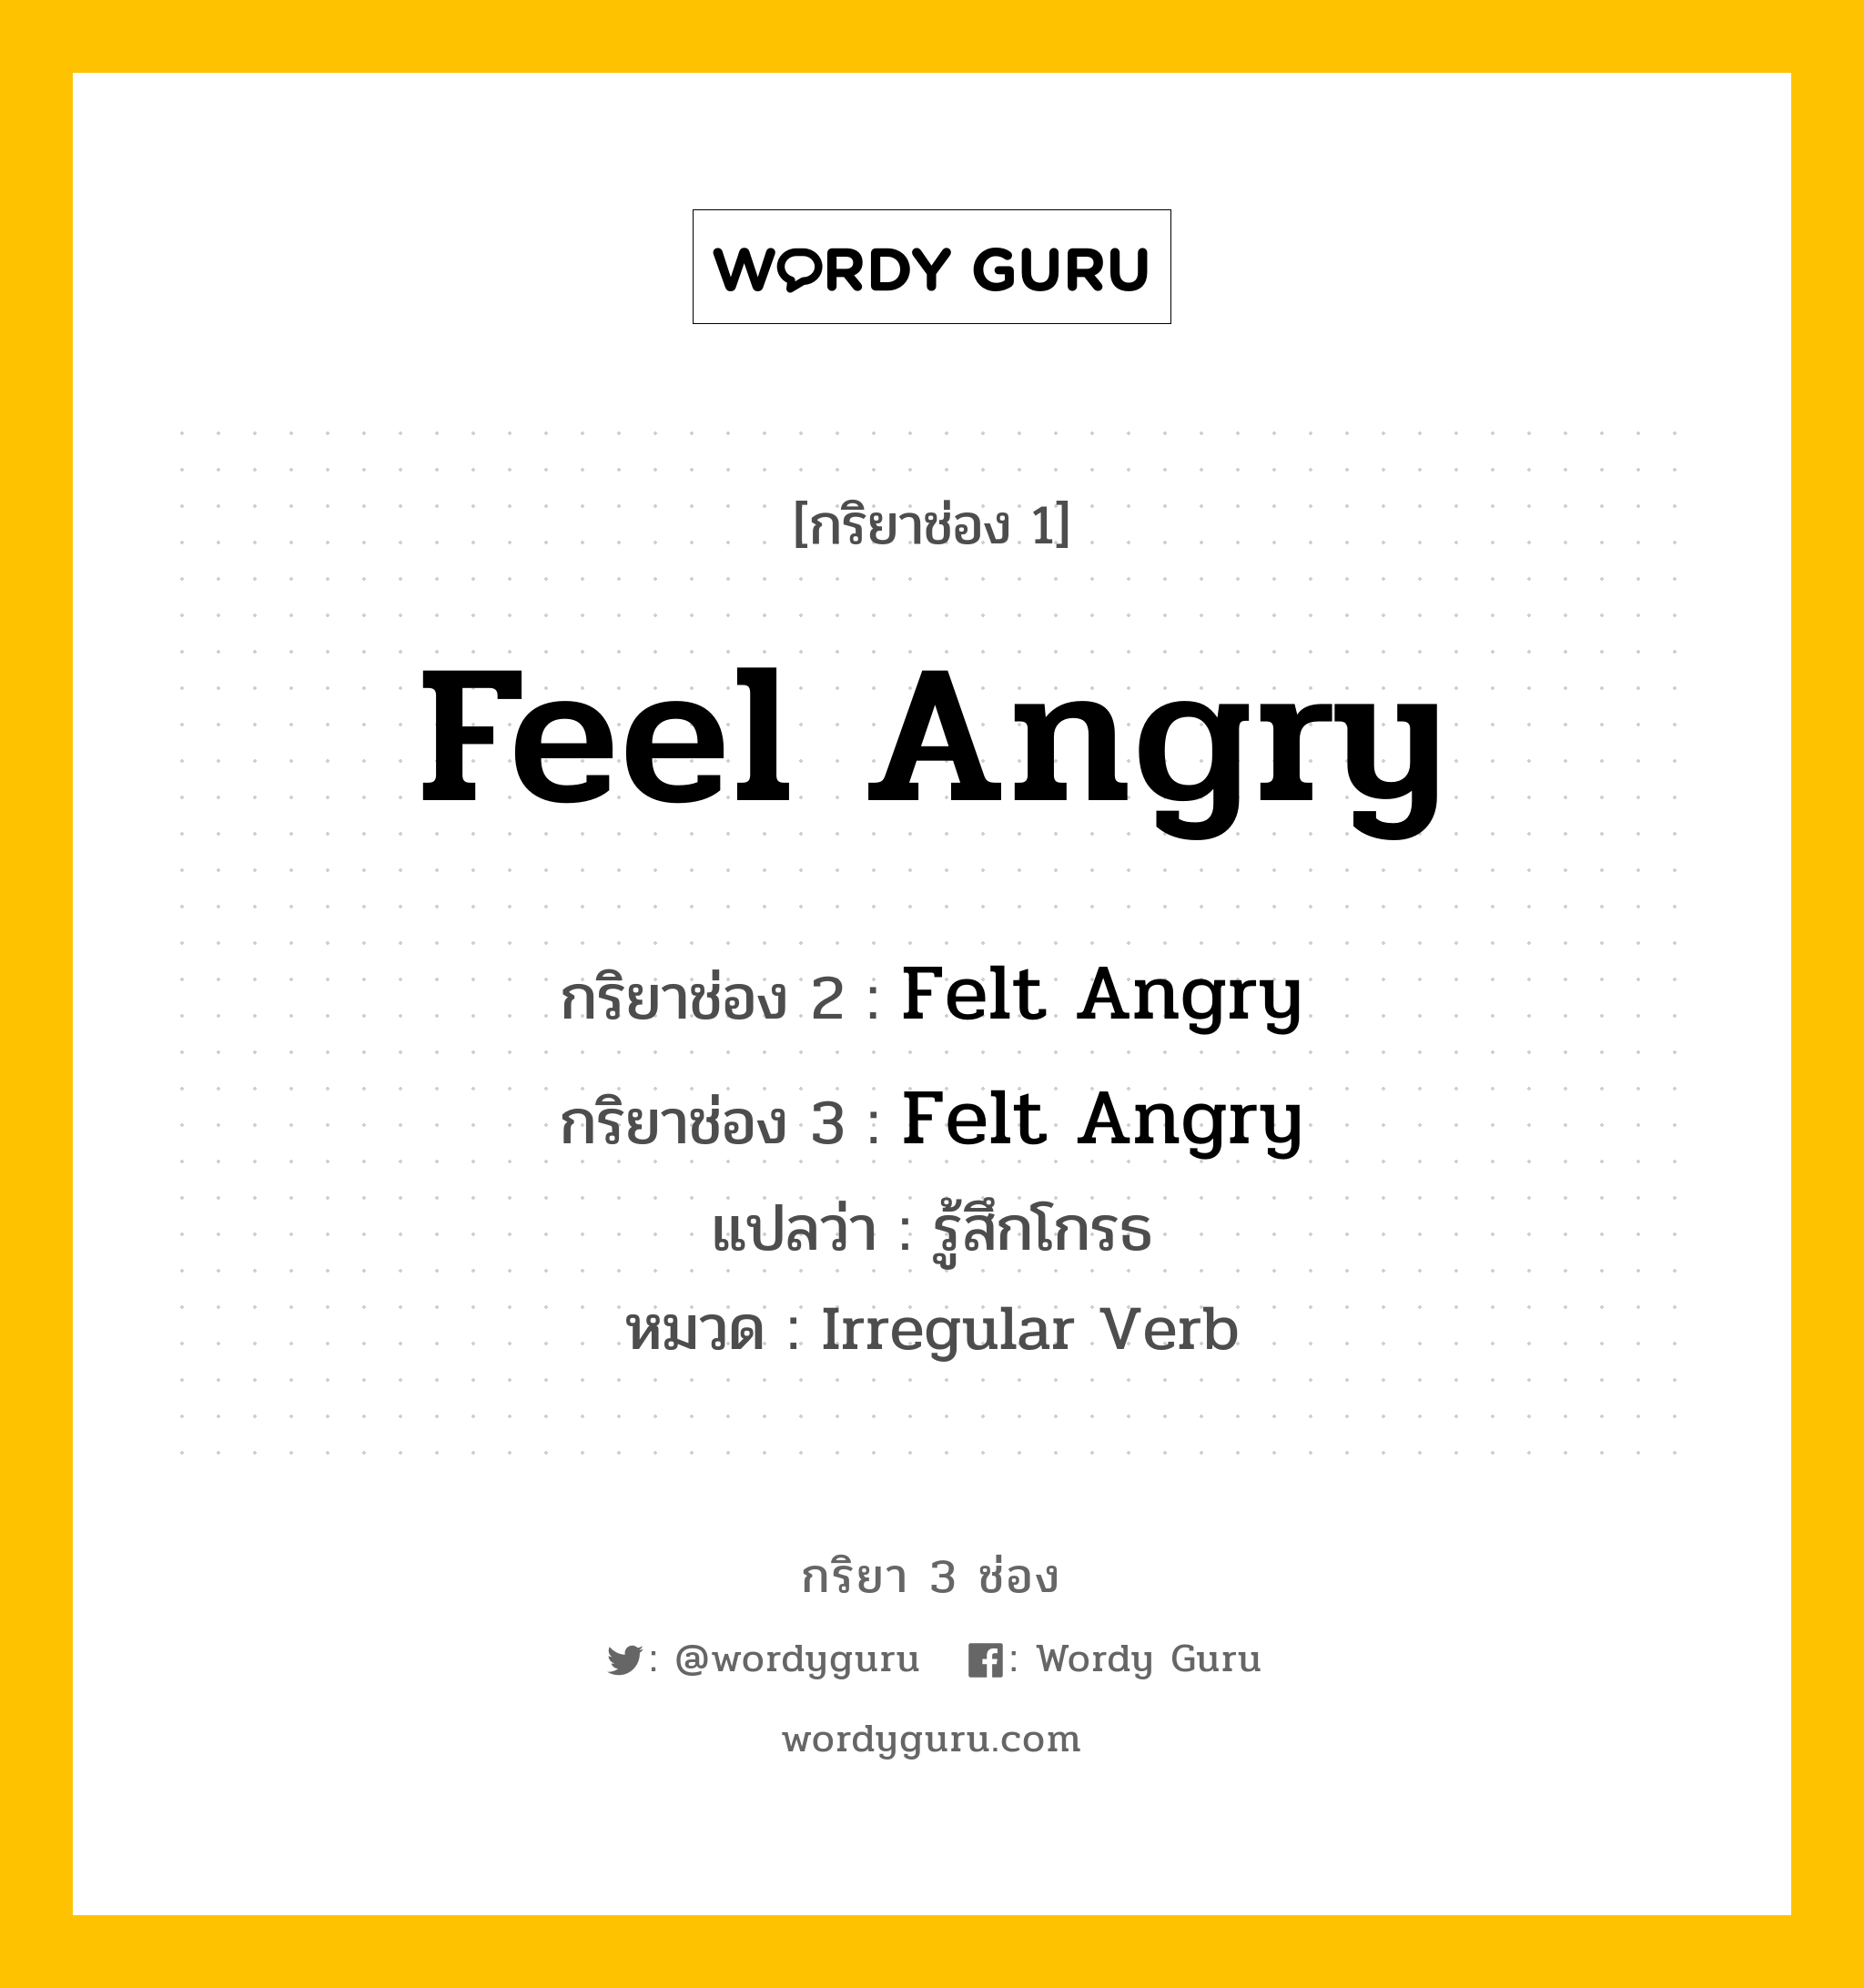 Feel Angry มีกริยา 3 ช่องอะไรบ้าง? คำศัพท์ในกลุ่มประเภท Irregular Verb, กริยาช่อง 1 Feel Angry กริยาช่อง 2 Felt Angry กริยาช่อง 3 Felt Angry แปลว่า รู้สึกโกรธ หมวด Irregular Verb หมวด Irregular Verb